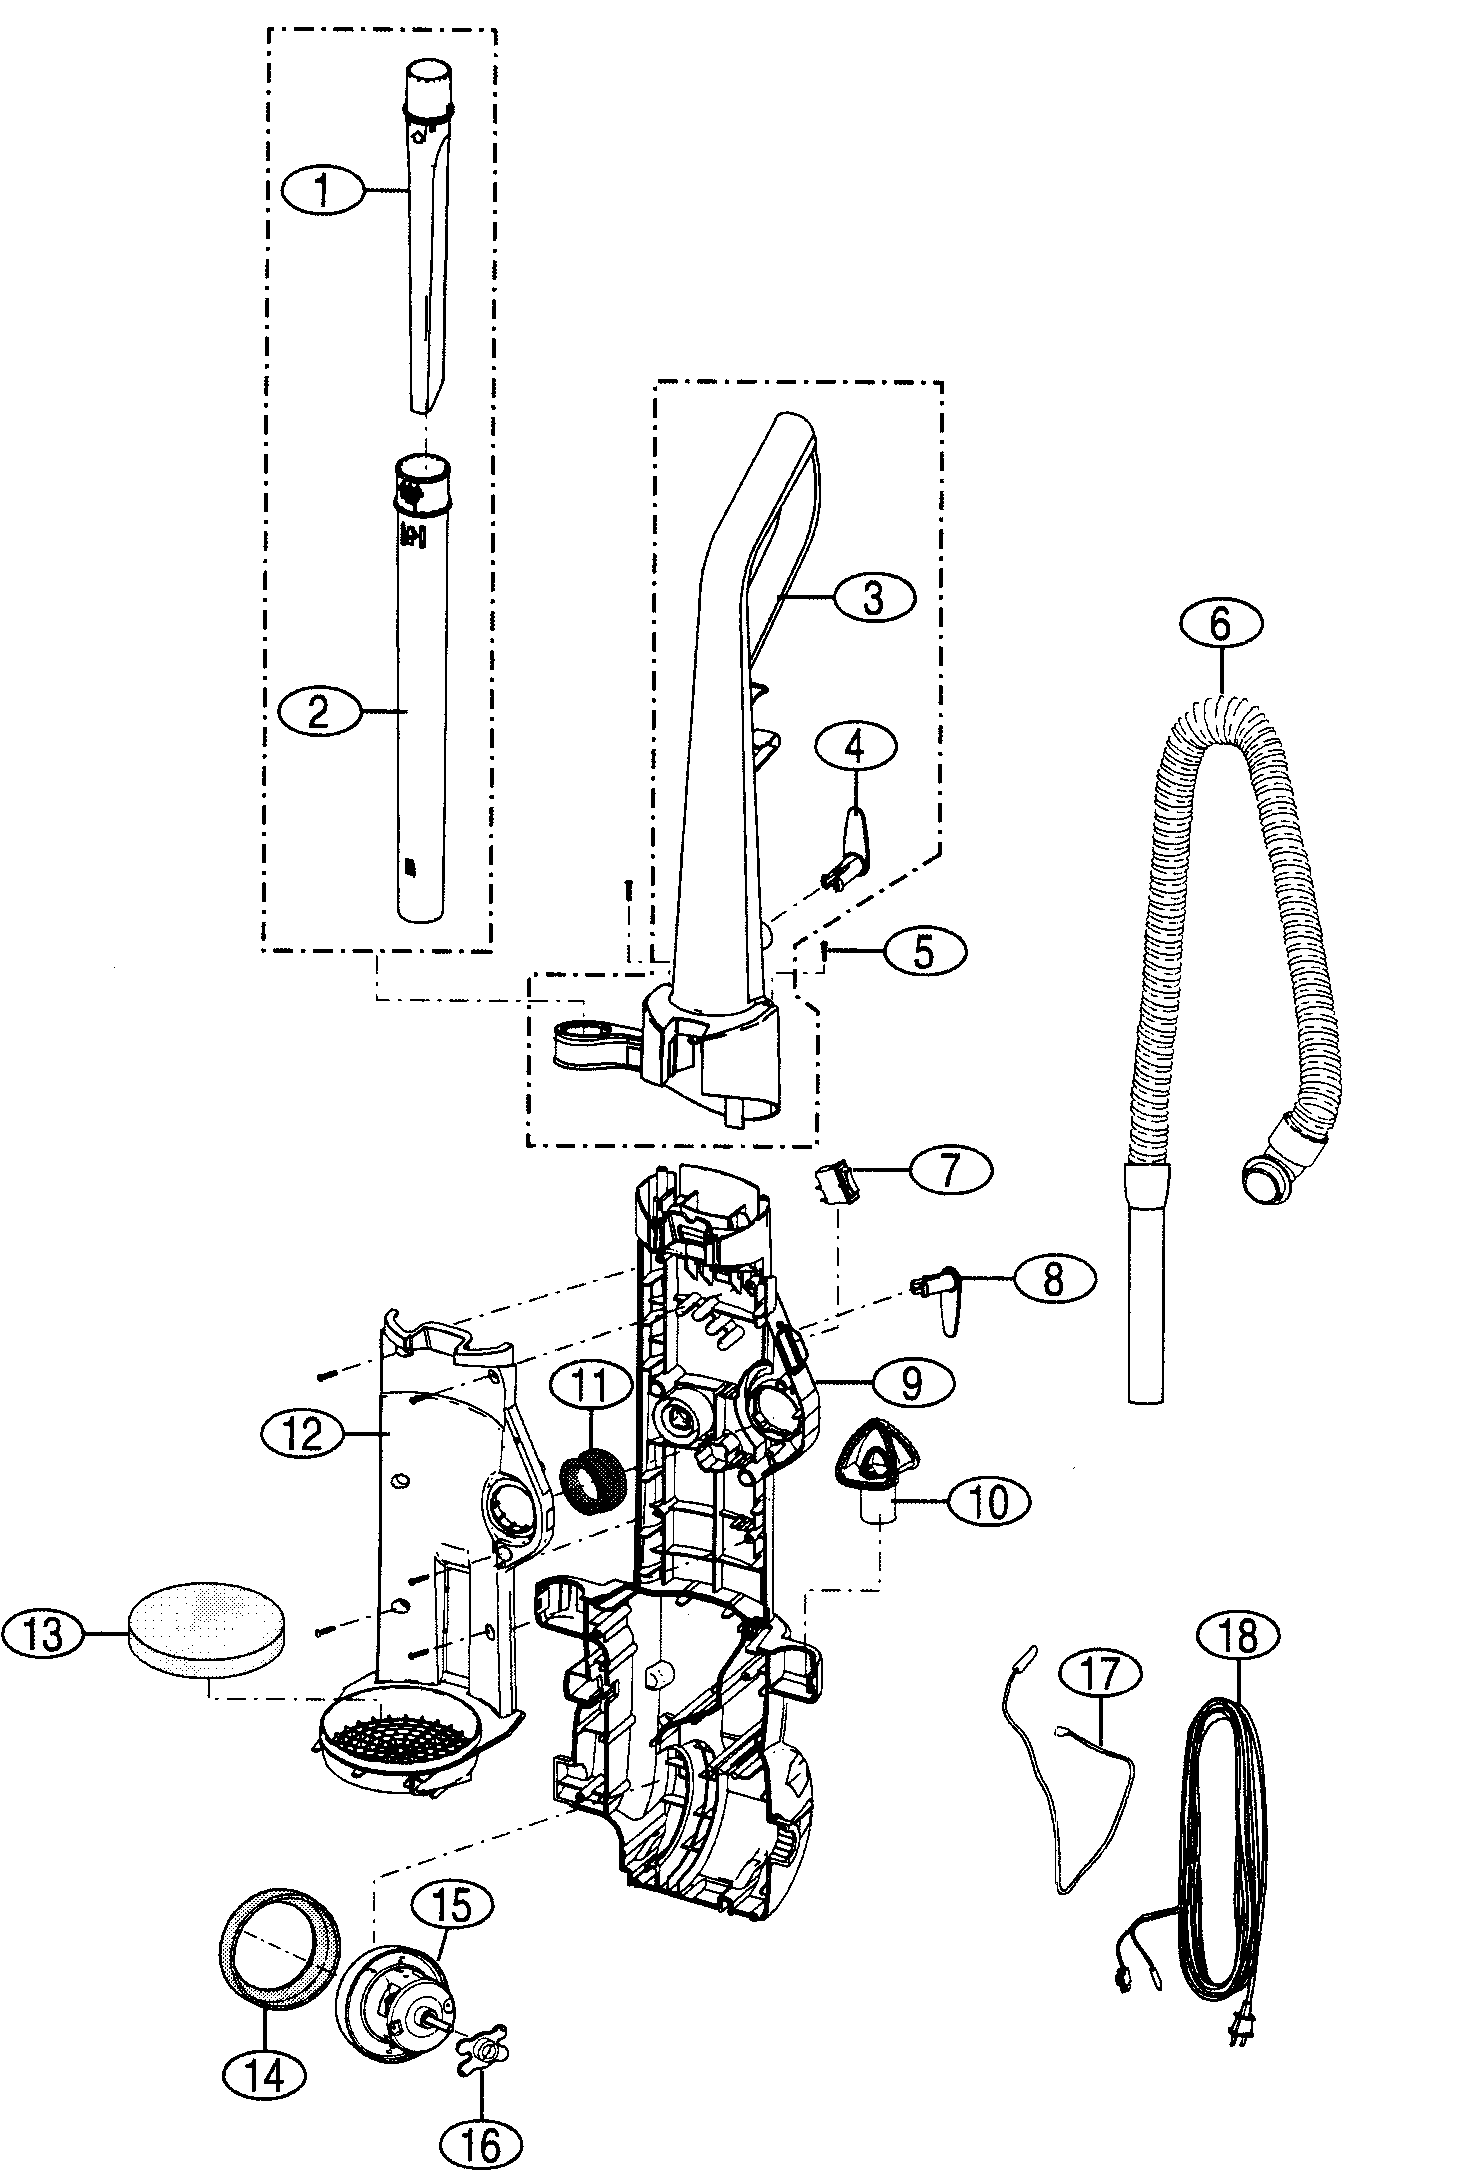 kenmore vacuum model 116 parts diagram